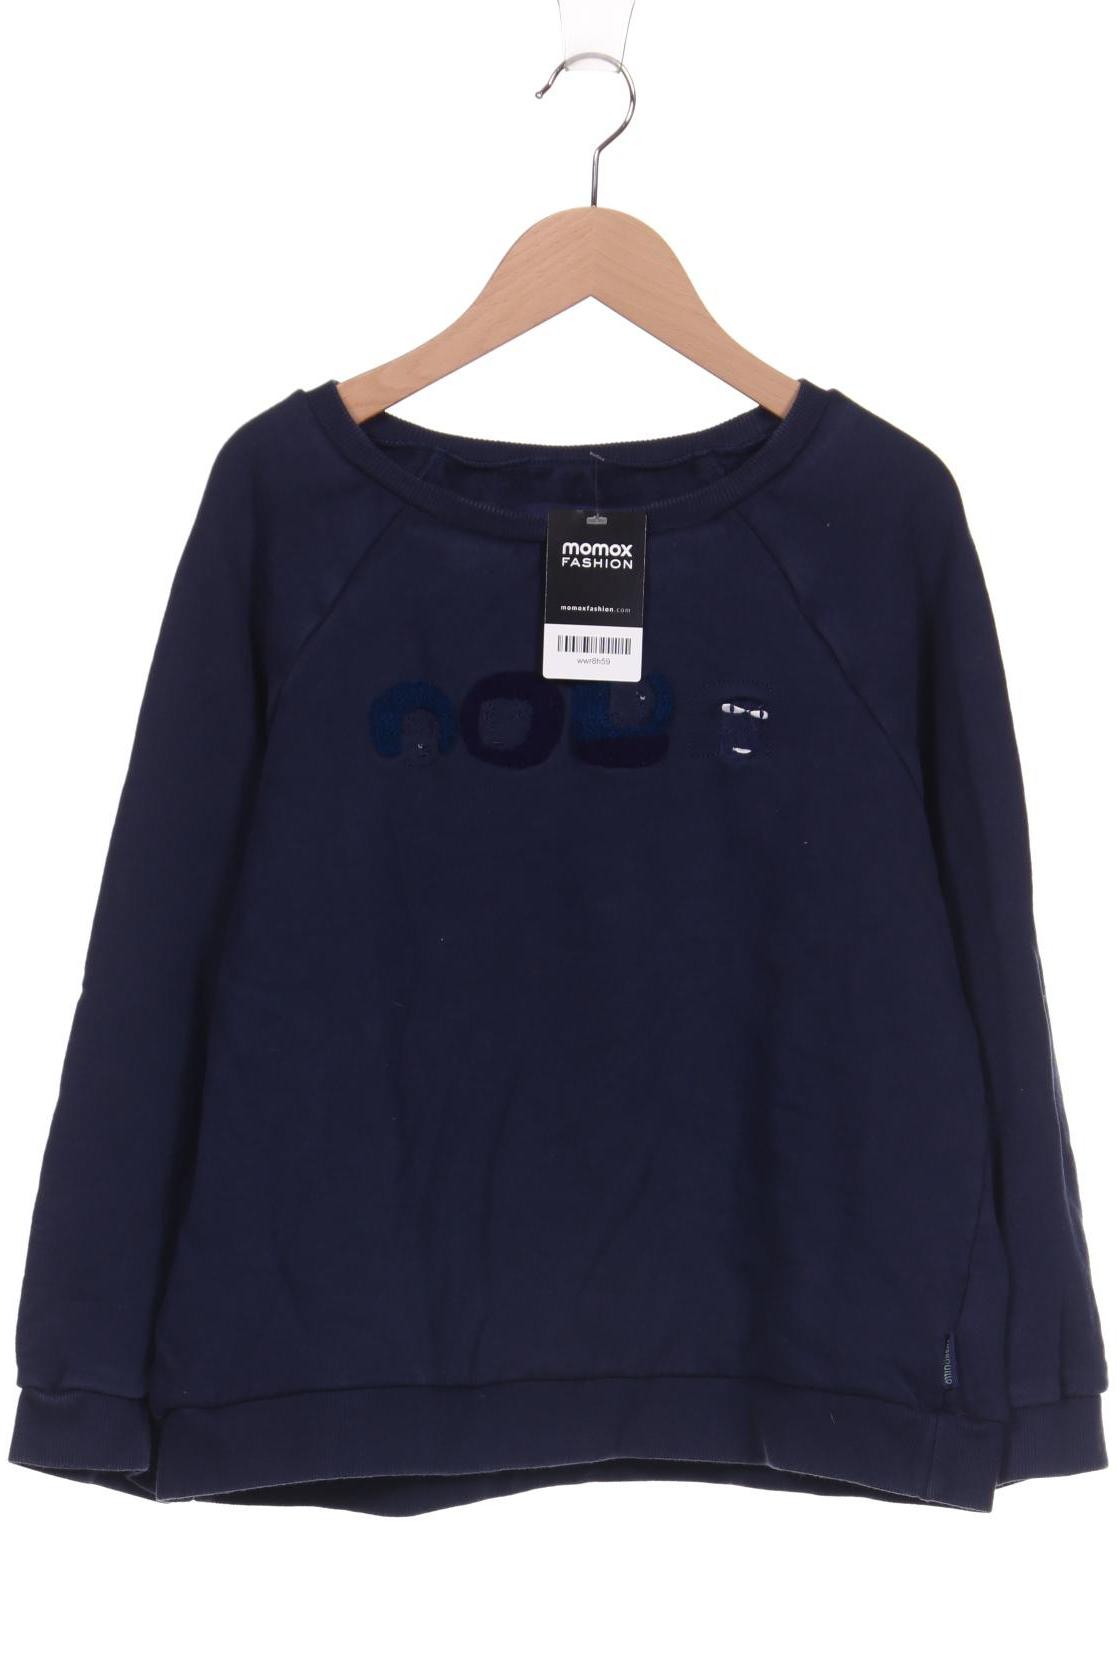 TRANQUILLO Damen Sweatshirt, marineblau von TRANQUILLO